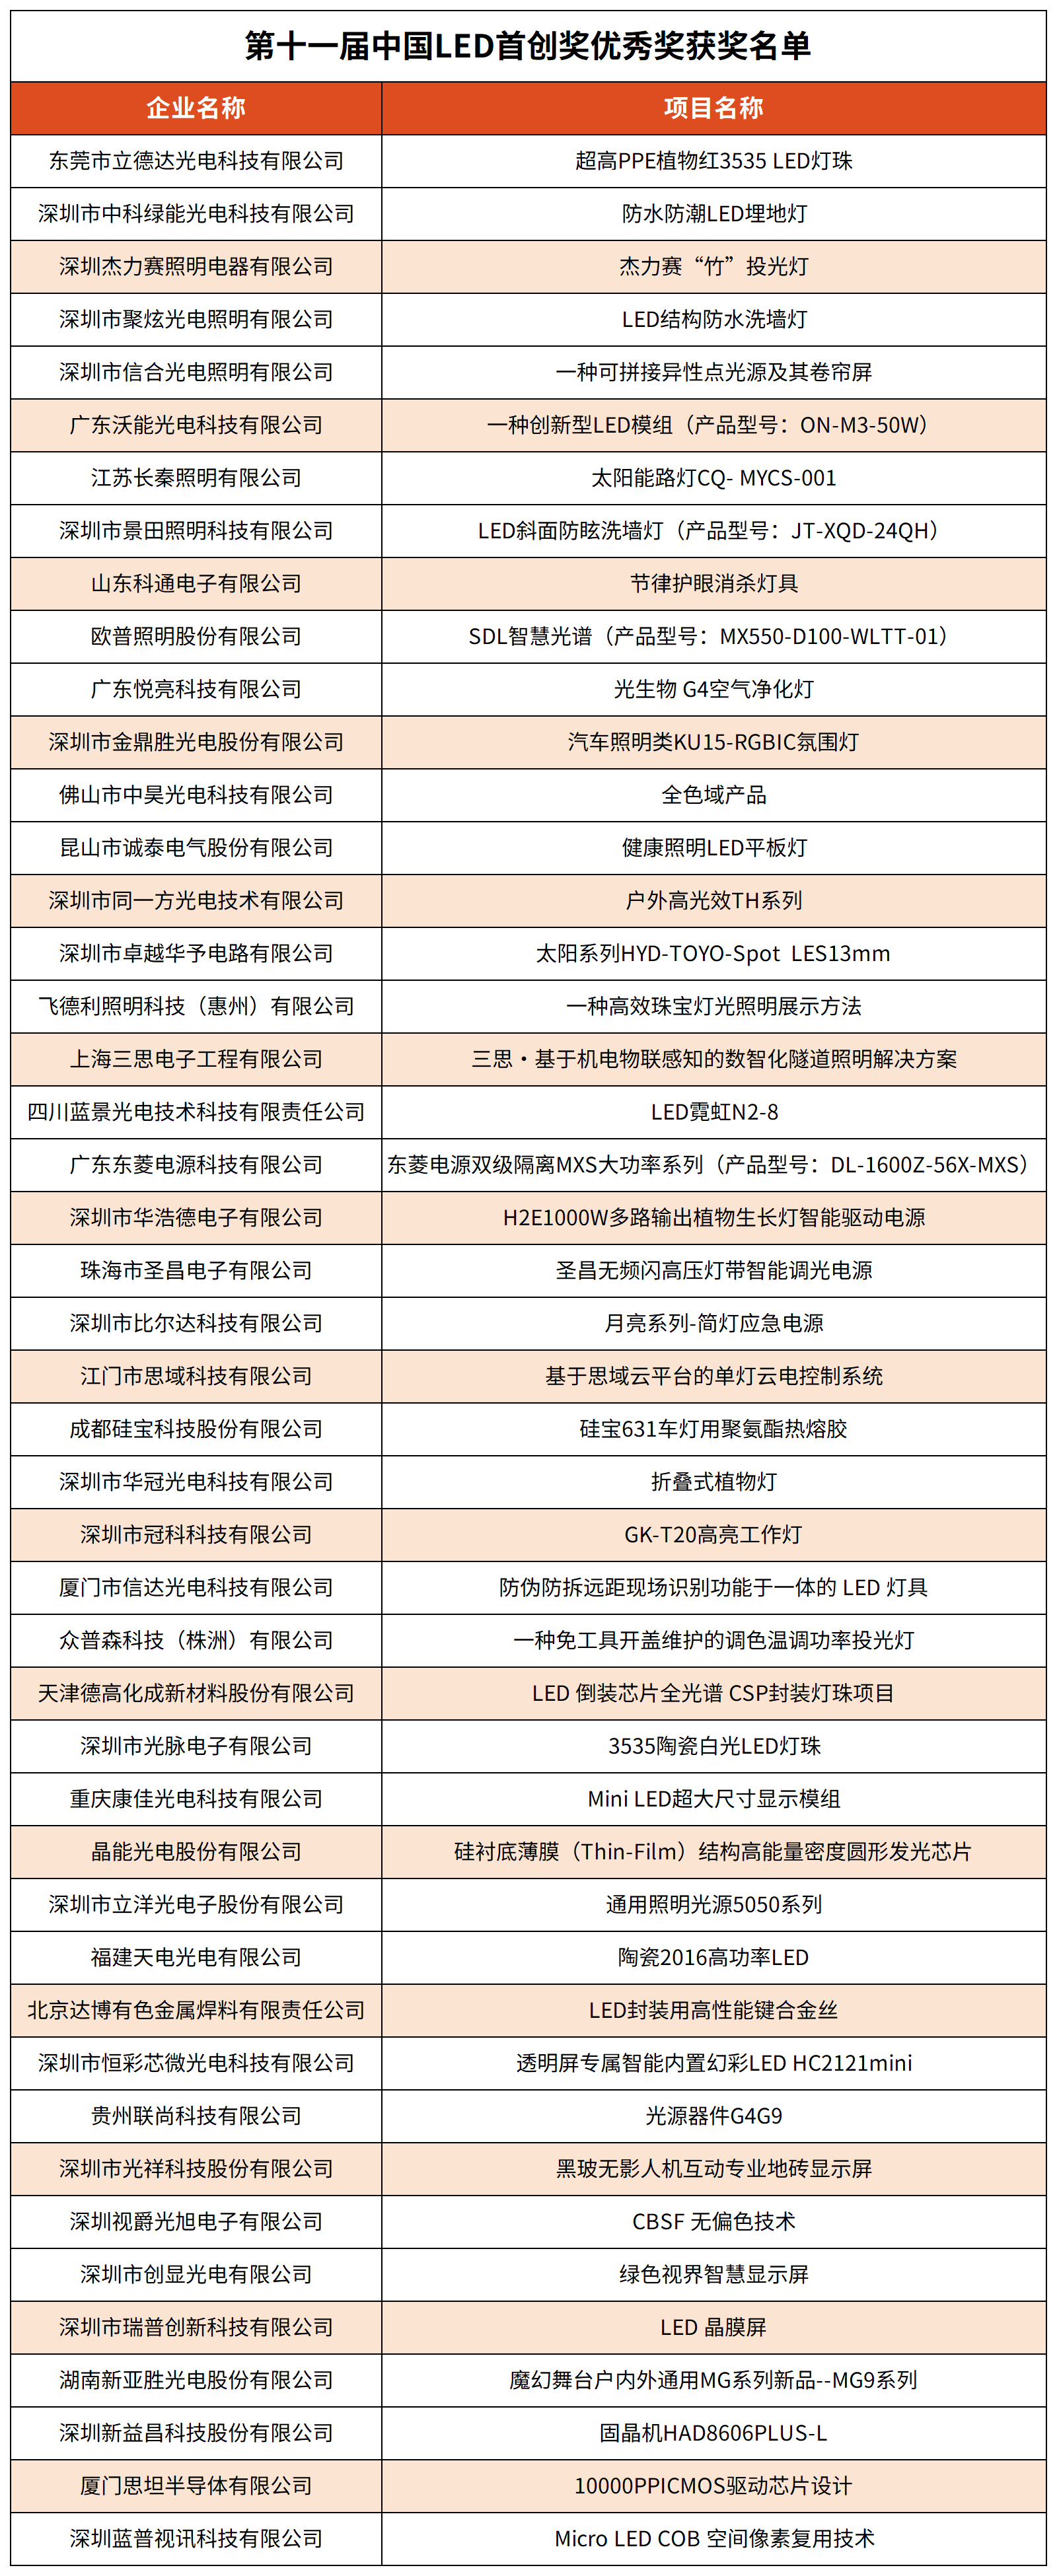 第十一届中国LED首创奖所有奖项获奖名单0612编辑版配图_优秀奖名单46家.png